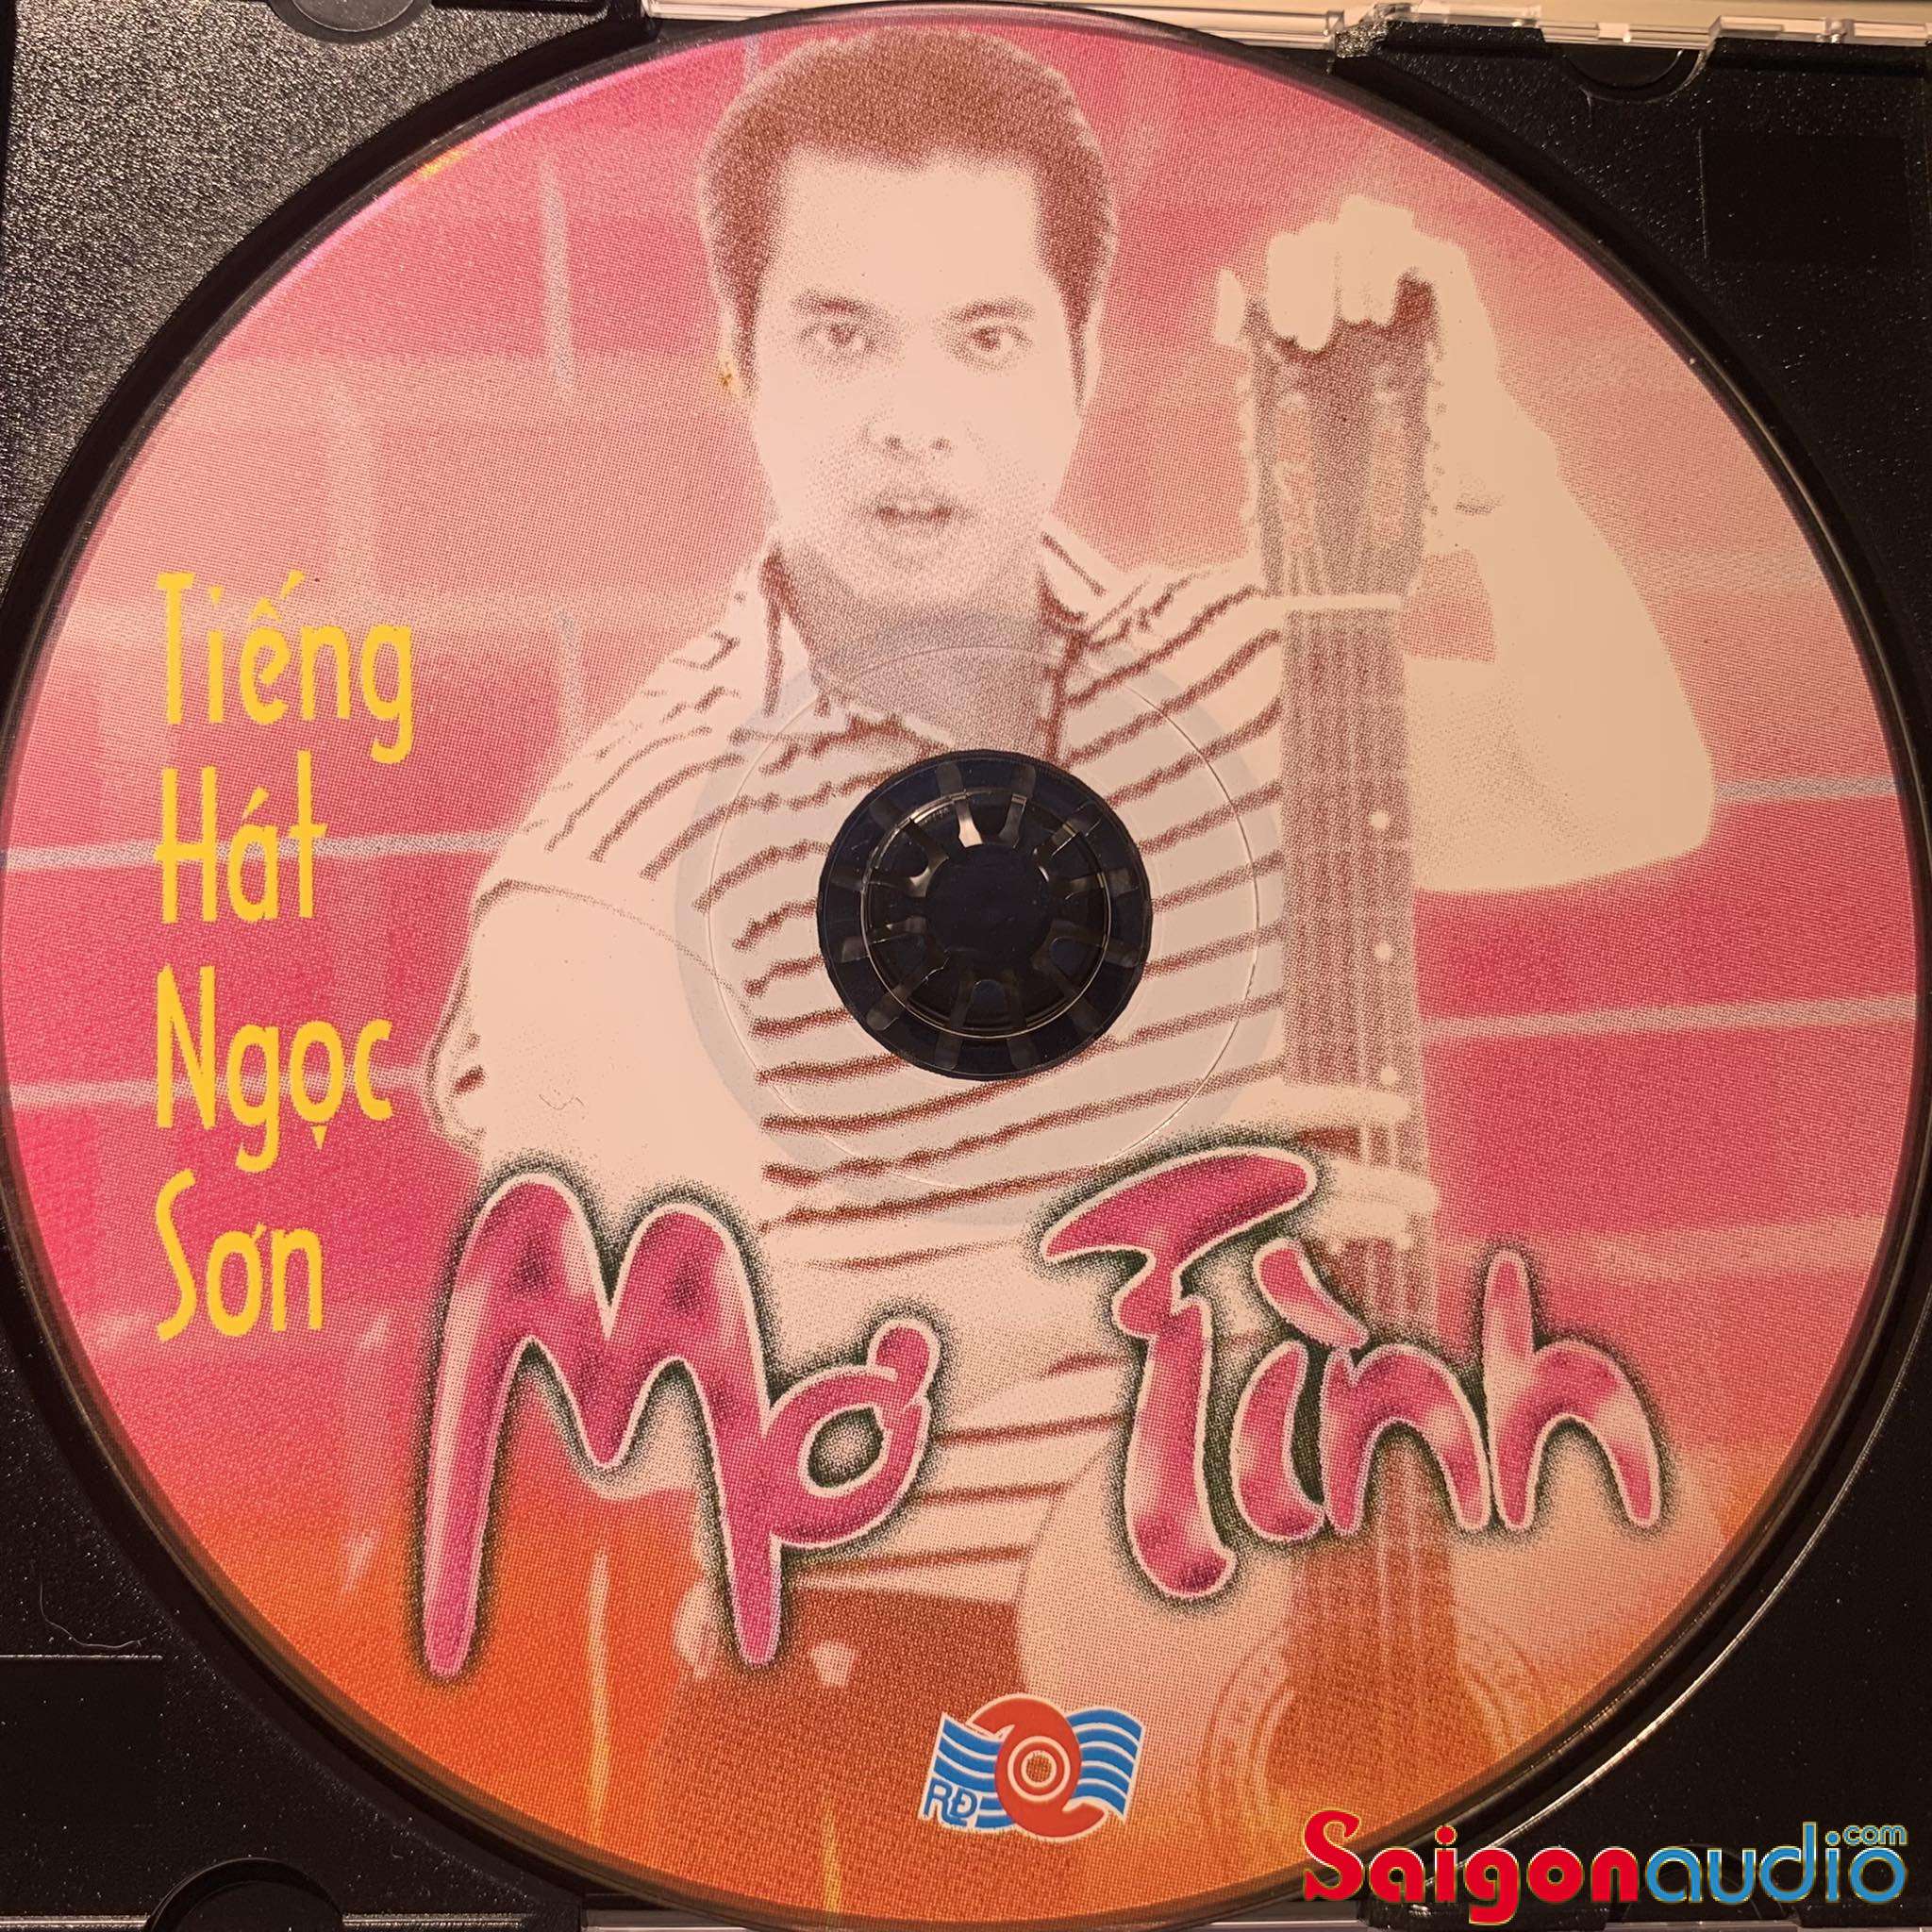 Đĩa CD gốc Tiềng Hát Ngọc Sơn - Mơ Tình (Free ship khi mua 2 đĩa CD cùng hoặc khác loại)